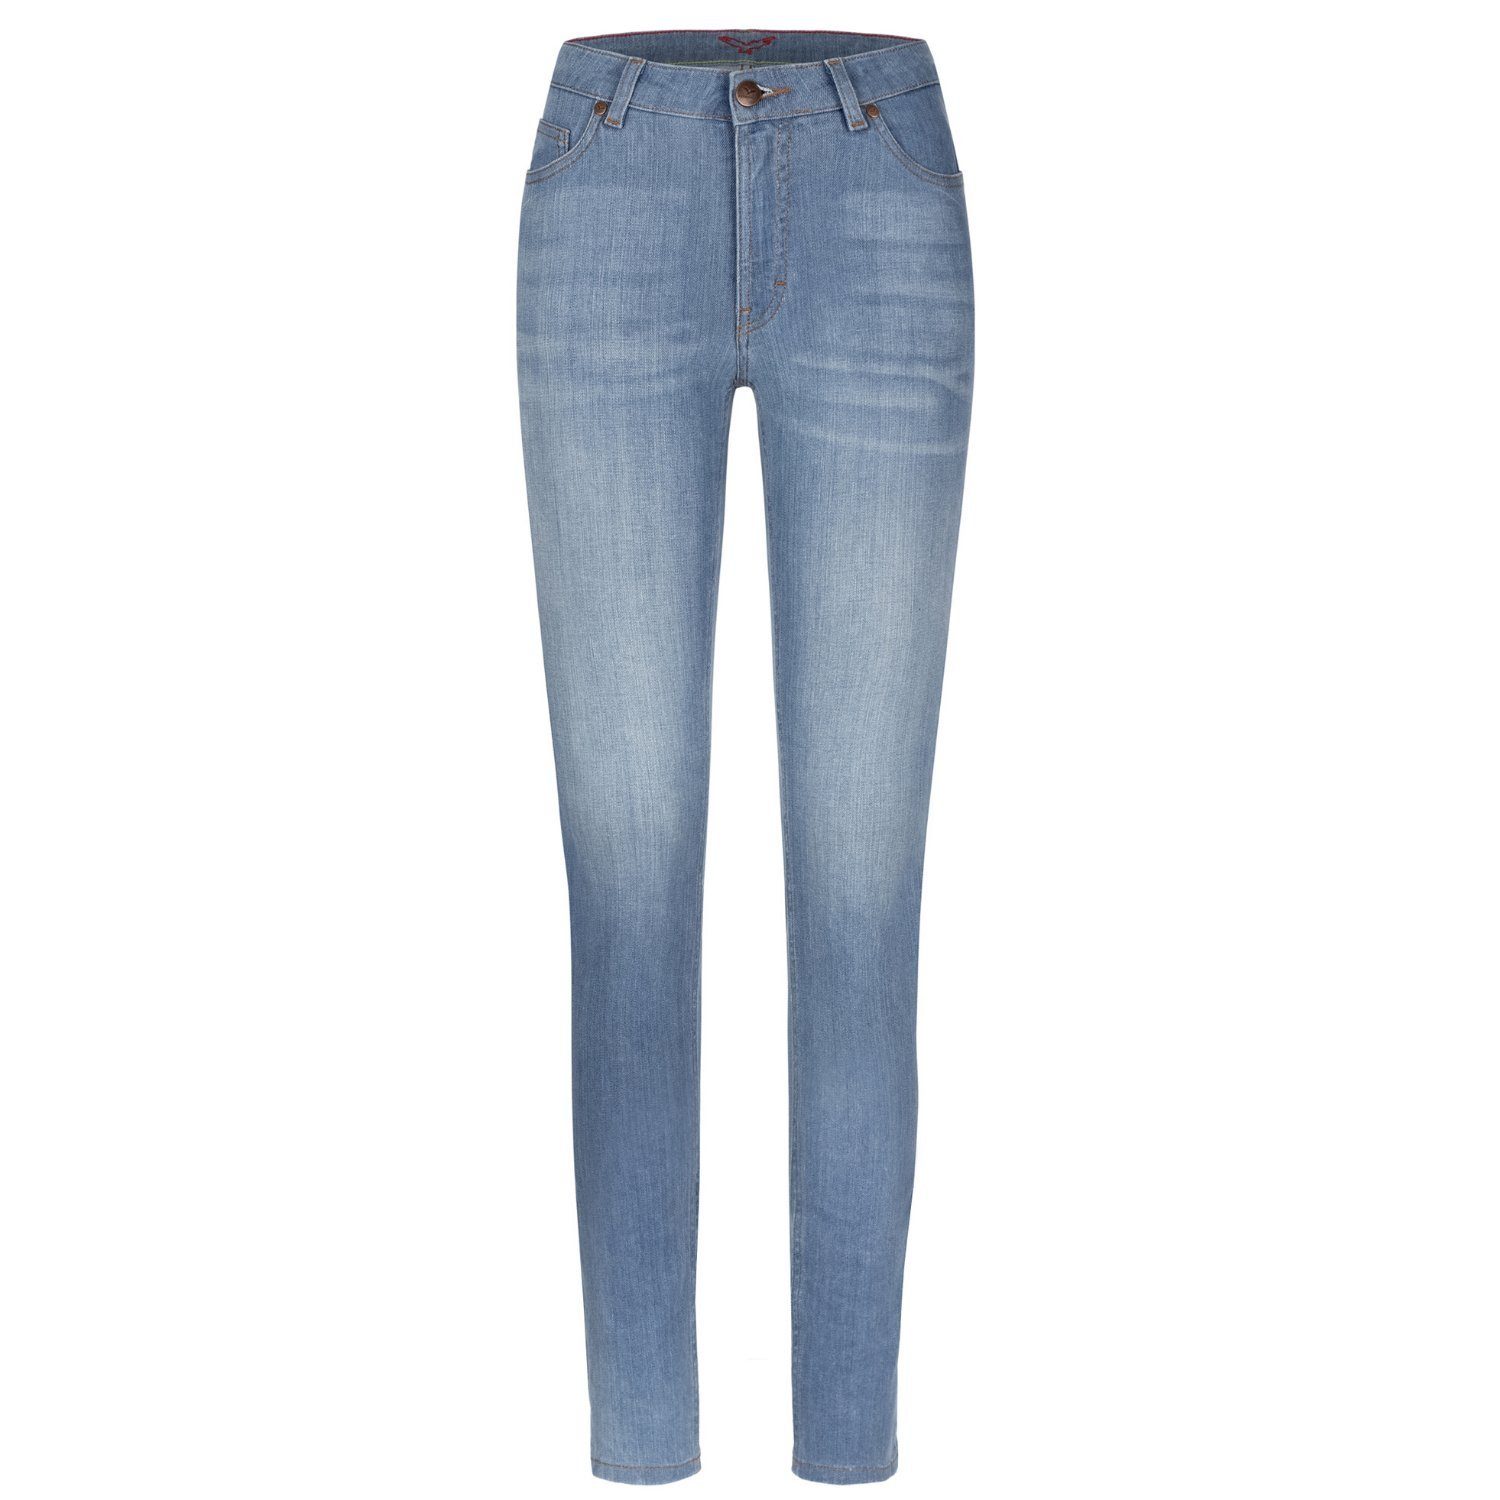 Feuervogl High-waist-Jeans fv-Han:na, Hyperflex Waist, Waist Damenjeans High Blue Skinny, High 5-Pocket-Style, Denim, Summer